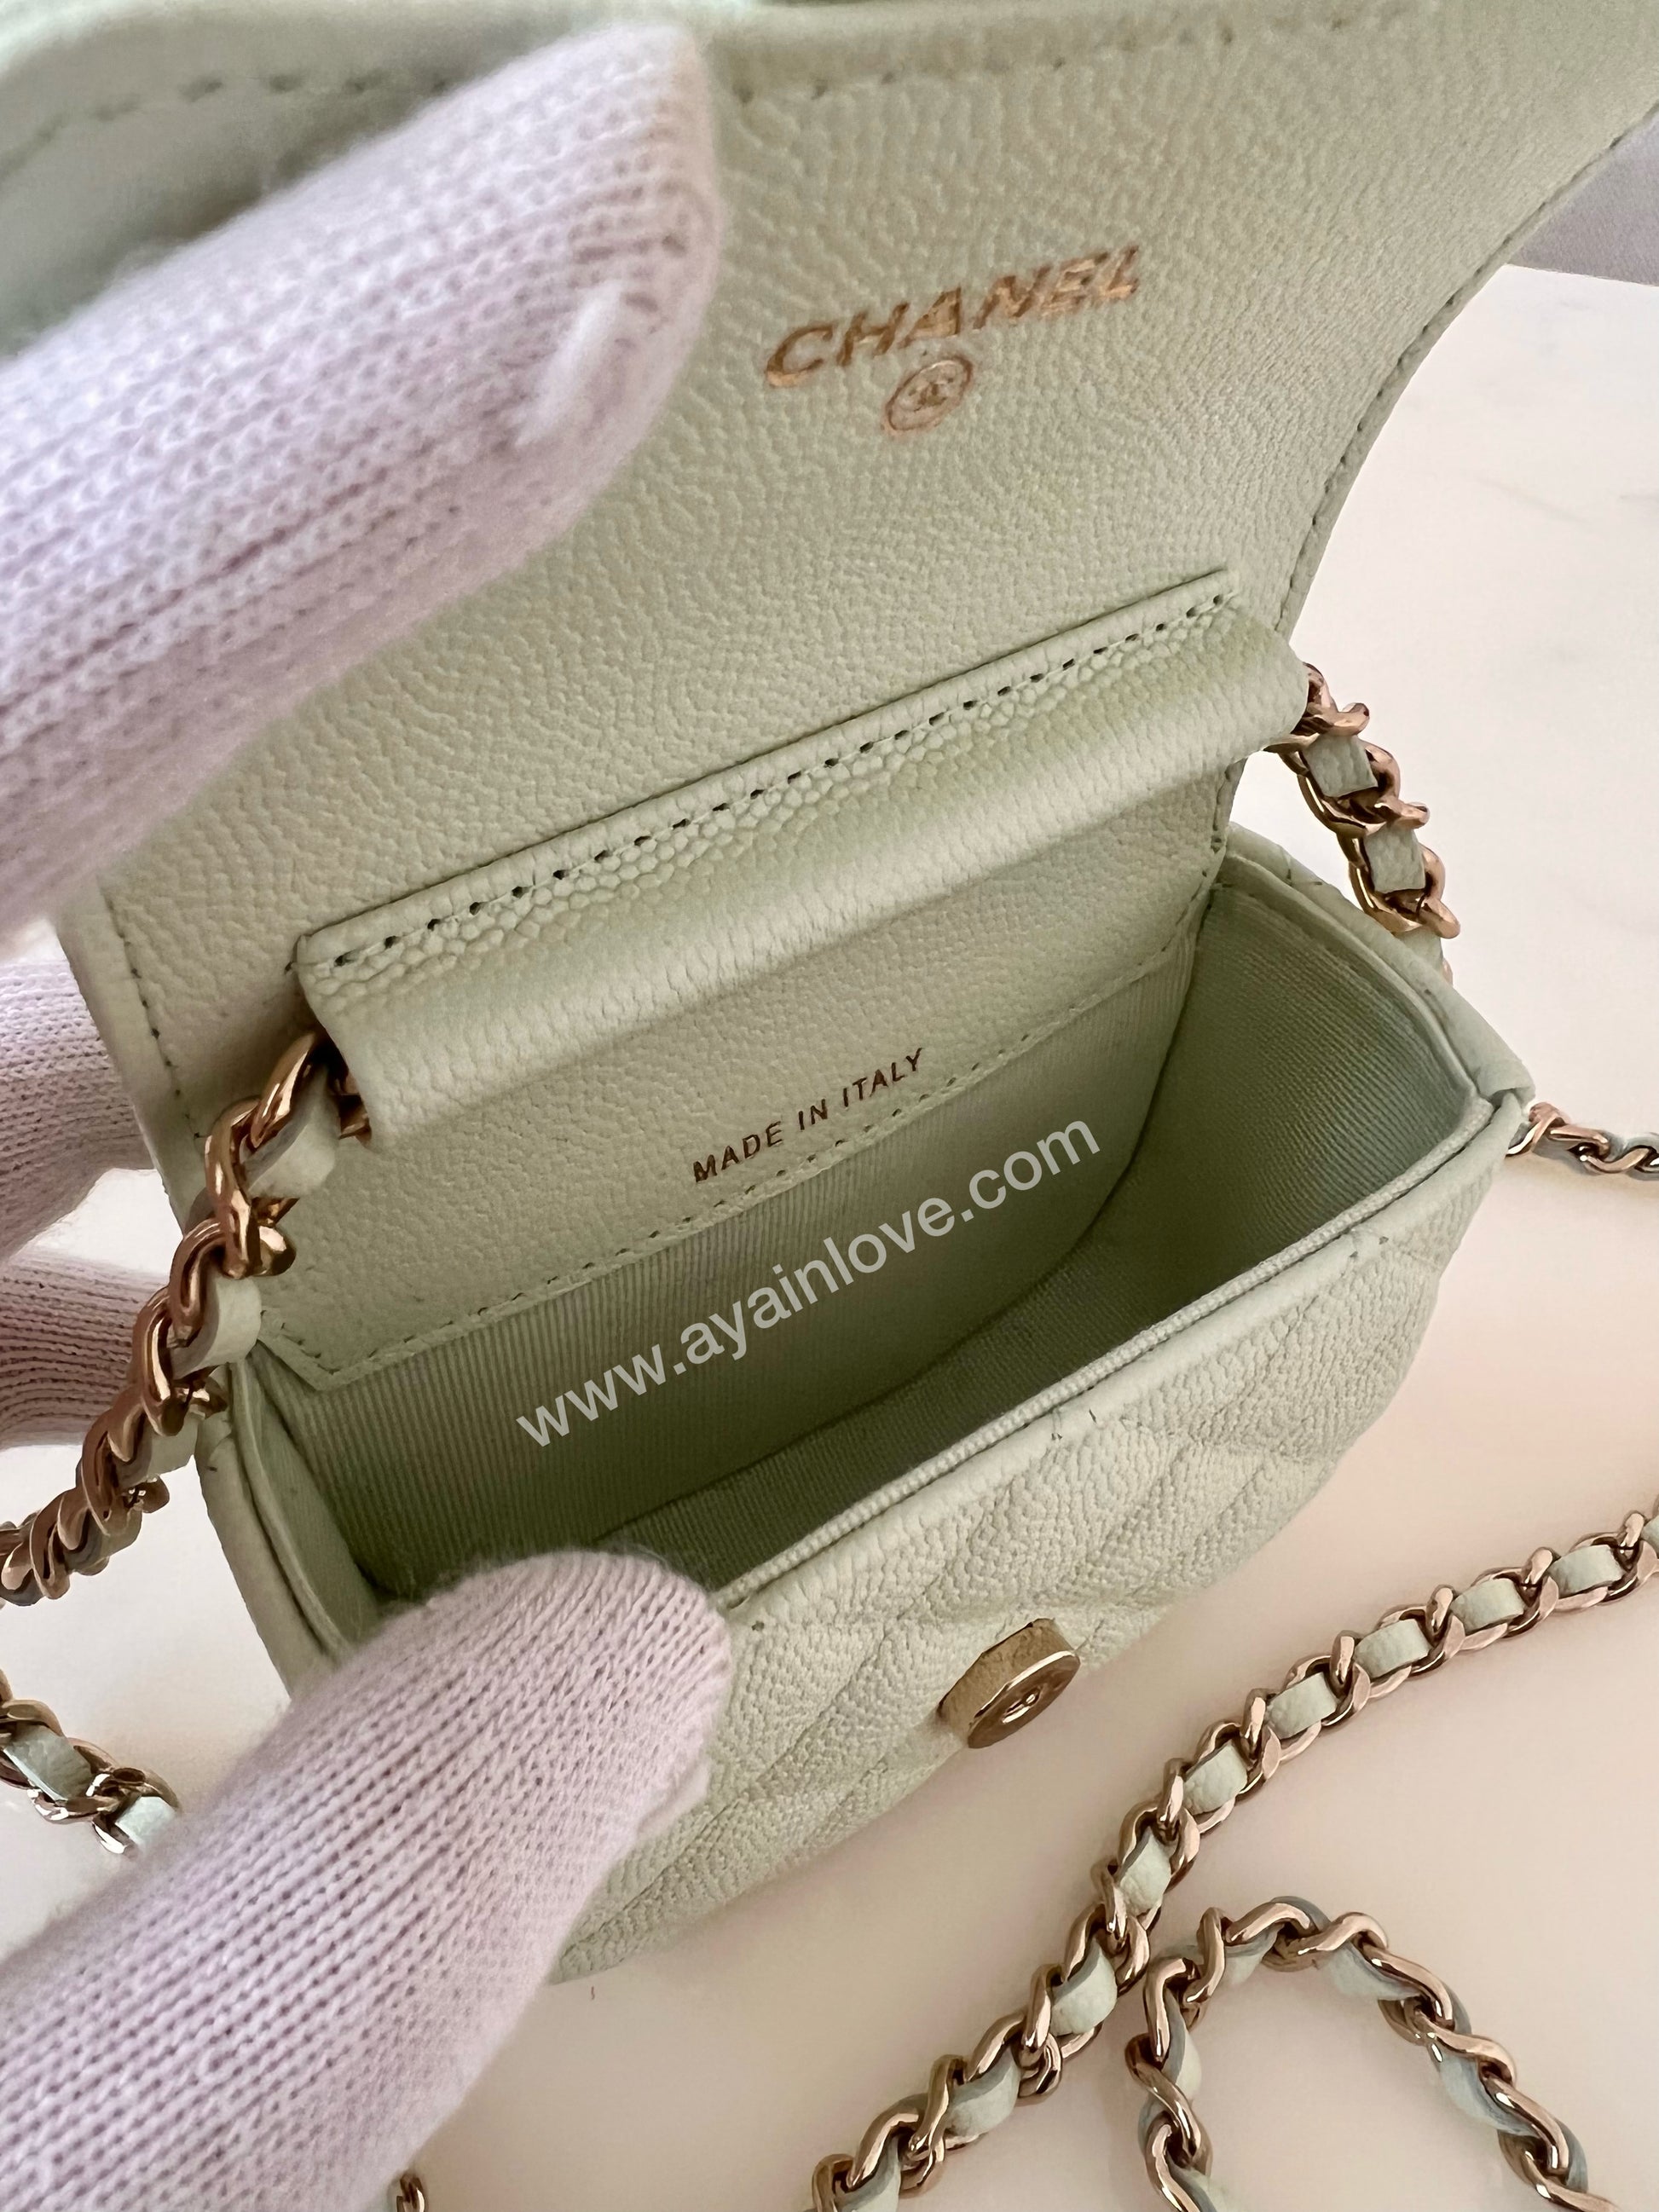 CHANEL 21C Mint Green Mini Rectangular Flap Bag Lt Gold Hw